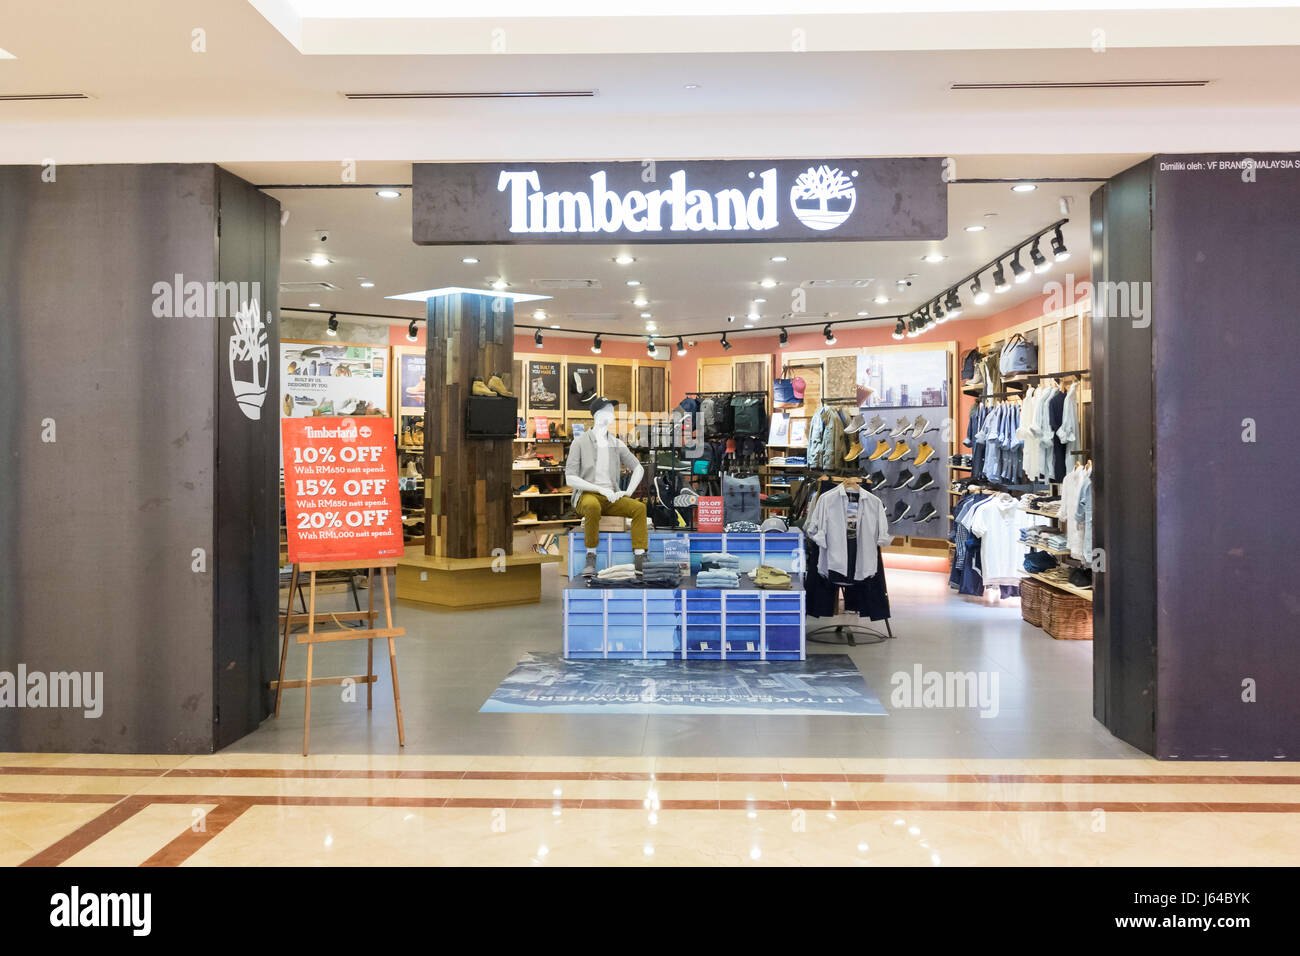 Timberland shop, Malaysia Foto Stock